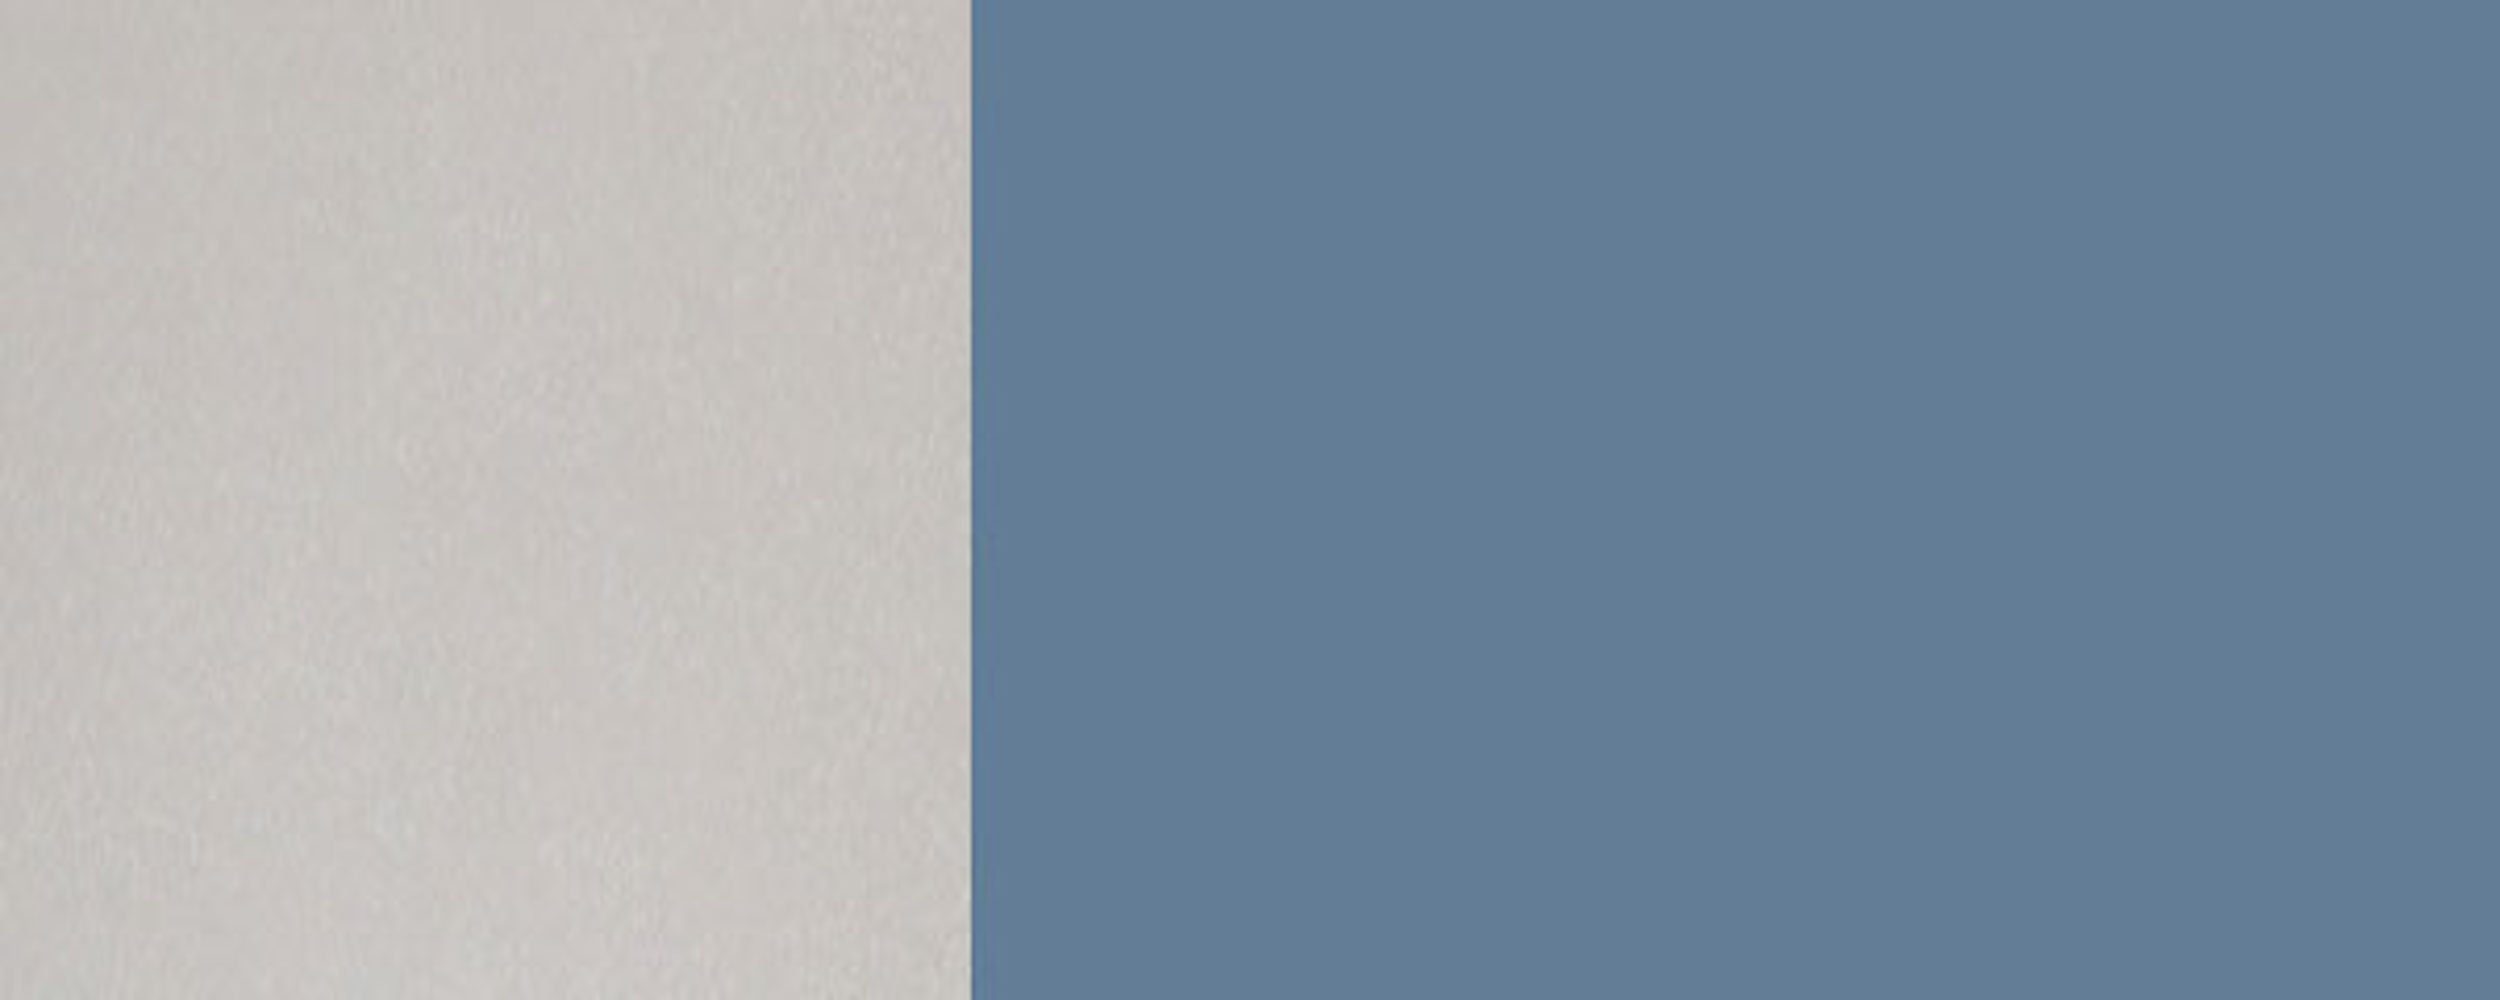 Feldmann-Wohnen Klapphängeschrank Florence (Florence) Hochglanz Ausführung 30cm taubenblau wählbar 1-türig 5014 Front-, grifflos RAL Korpusfarbe und